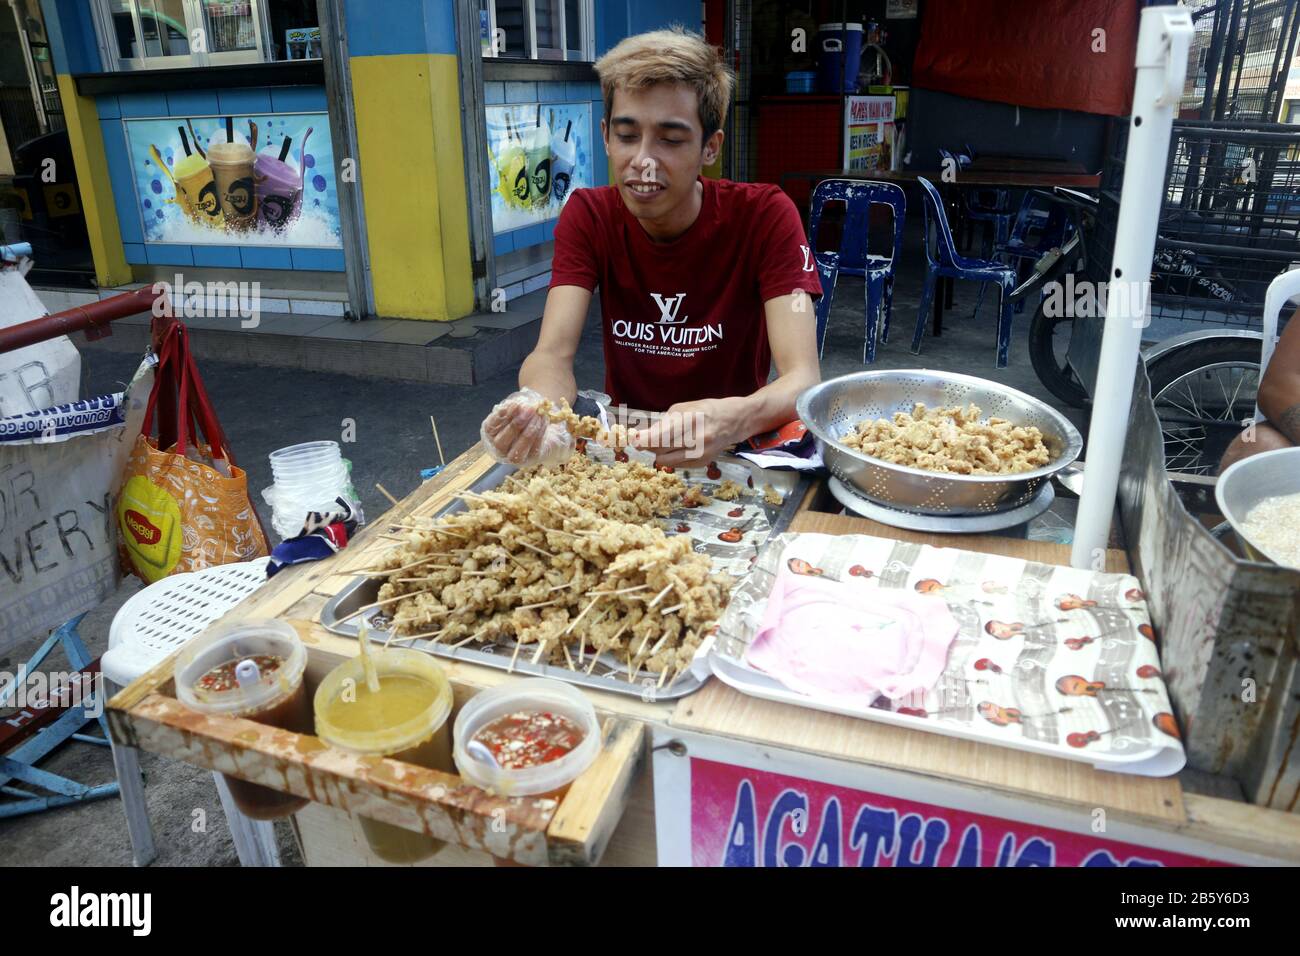 Antipolo, Rizal, Philippines - 28 février 2020: Le vendeur de nourriture de rue à leur stand de nourriture vend des innards de poulet frits profonds appelés buche et bau bat Banque D'Images